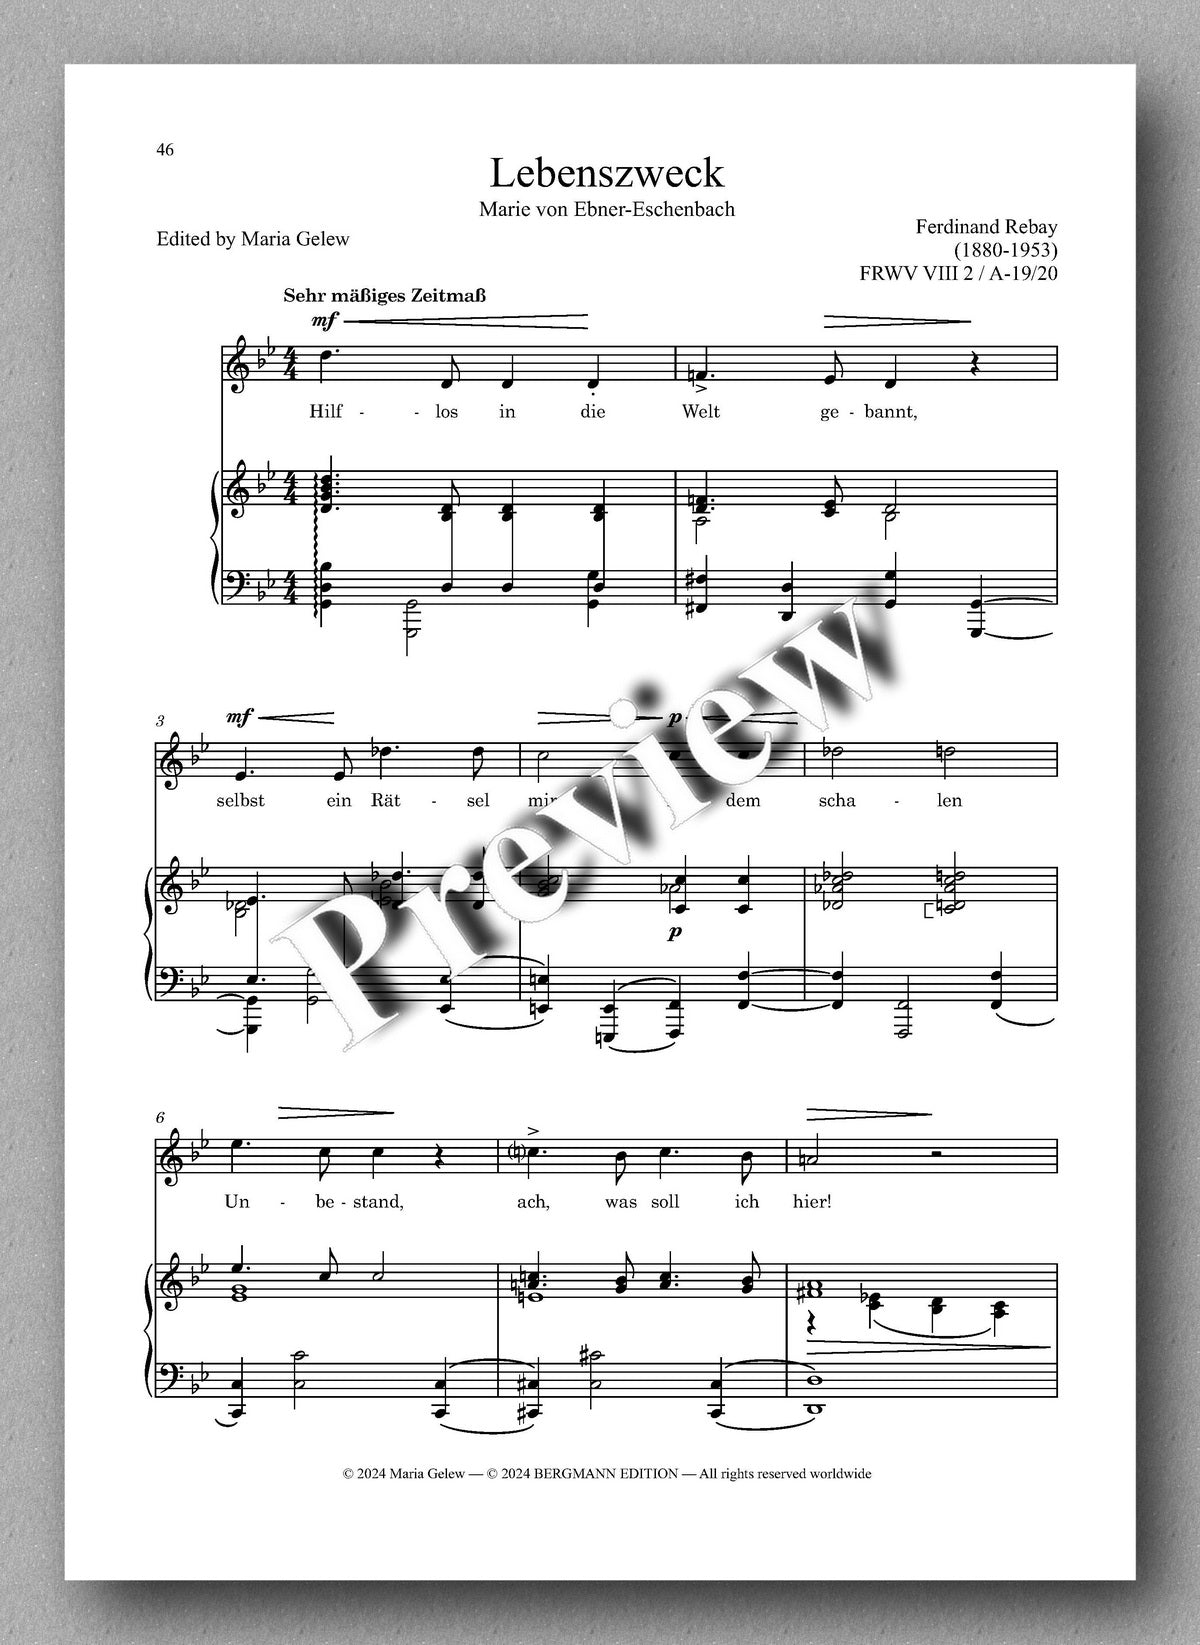 Rebay, Lieder No. 16, Lieder nach Gedichten verschiedener Dichter - preview of the music score 4